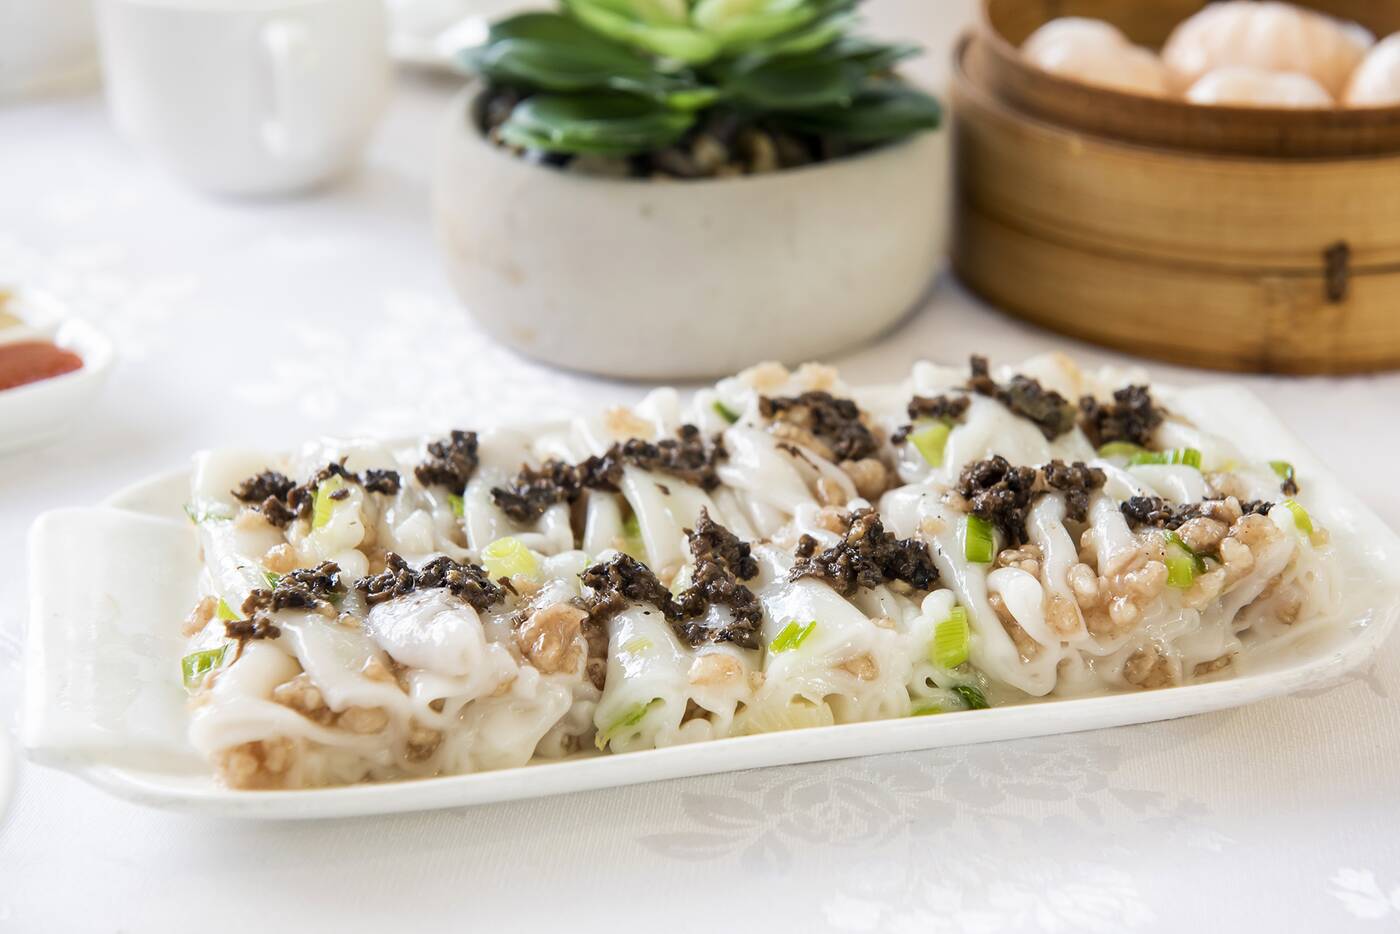 yangs chinese cuisine toronto